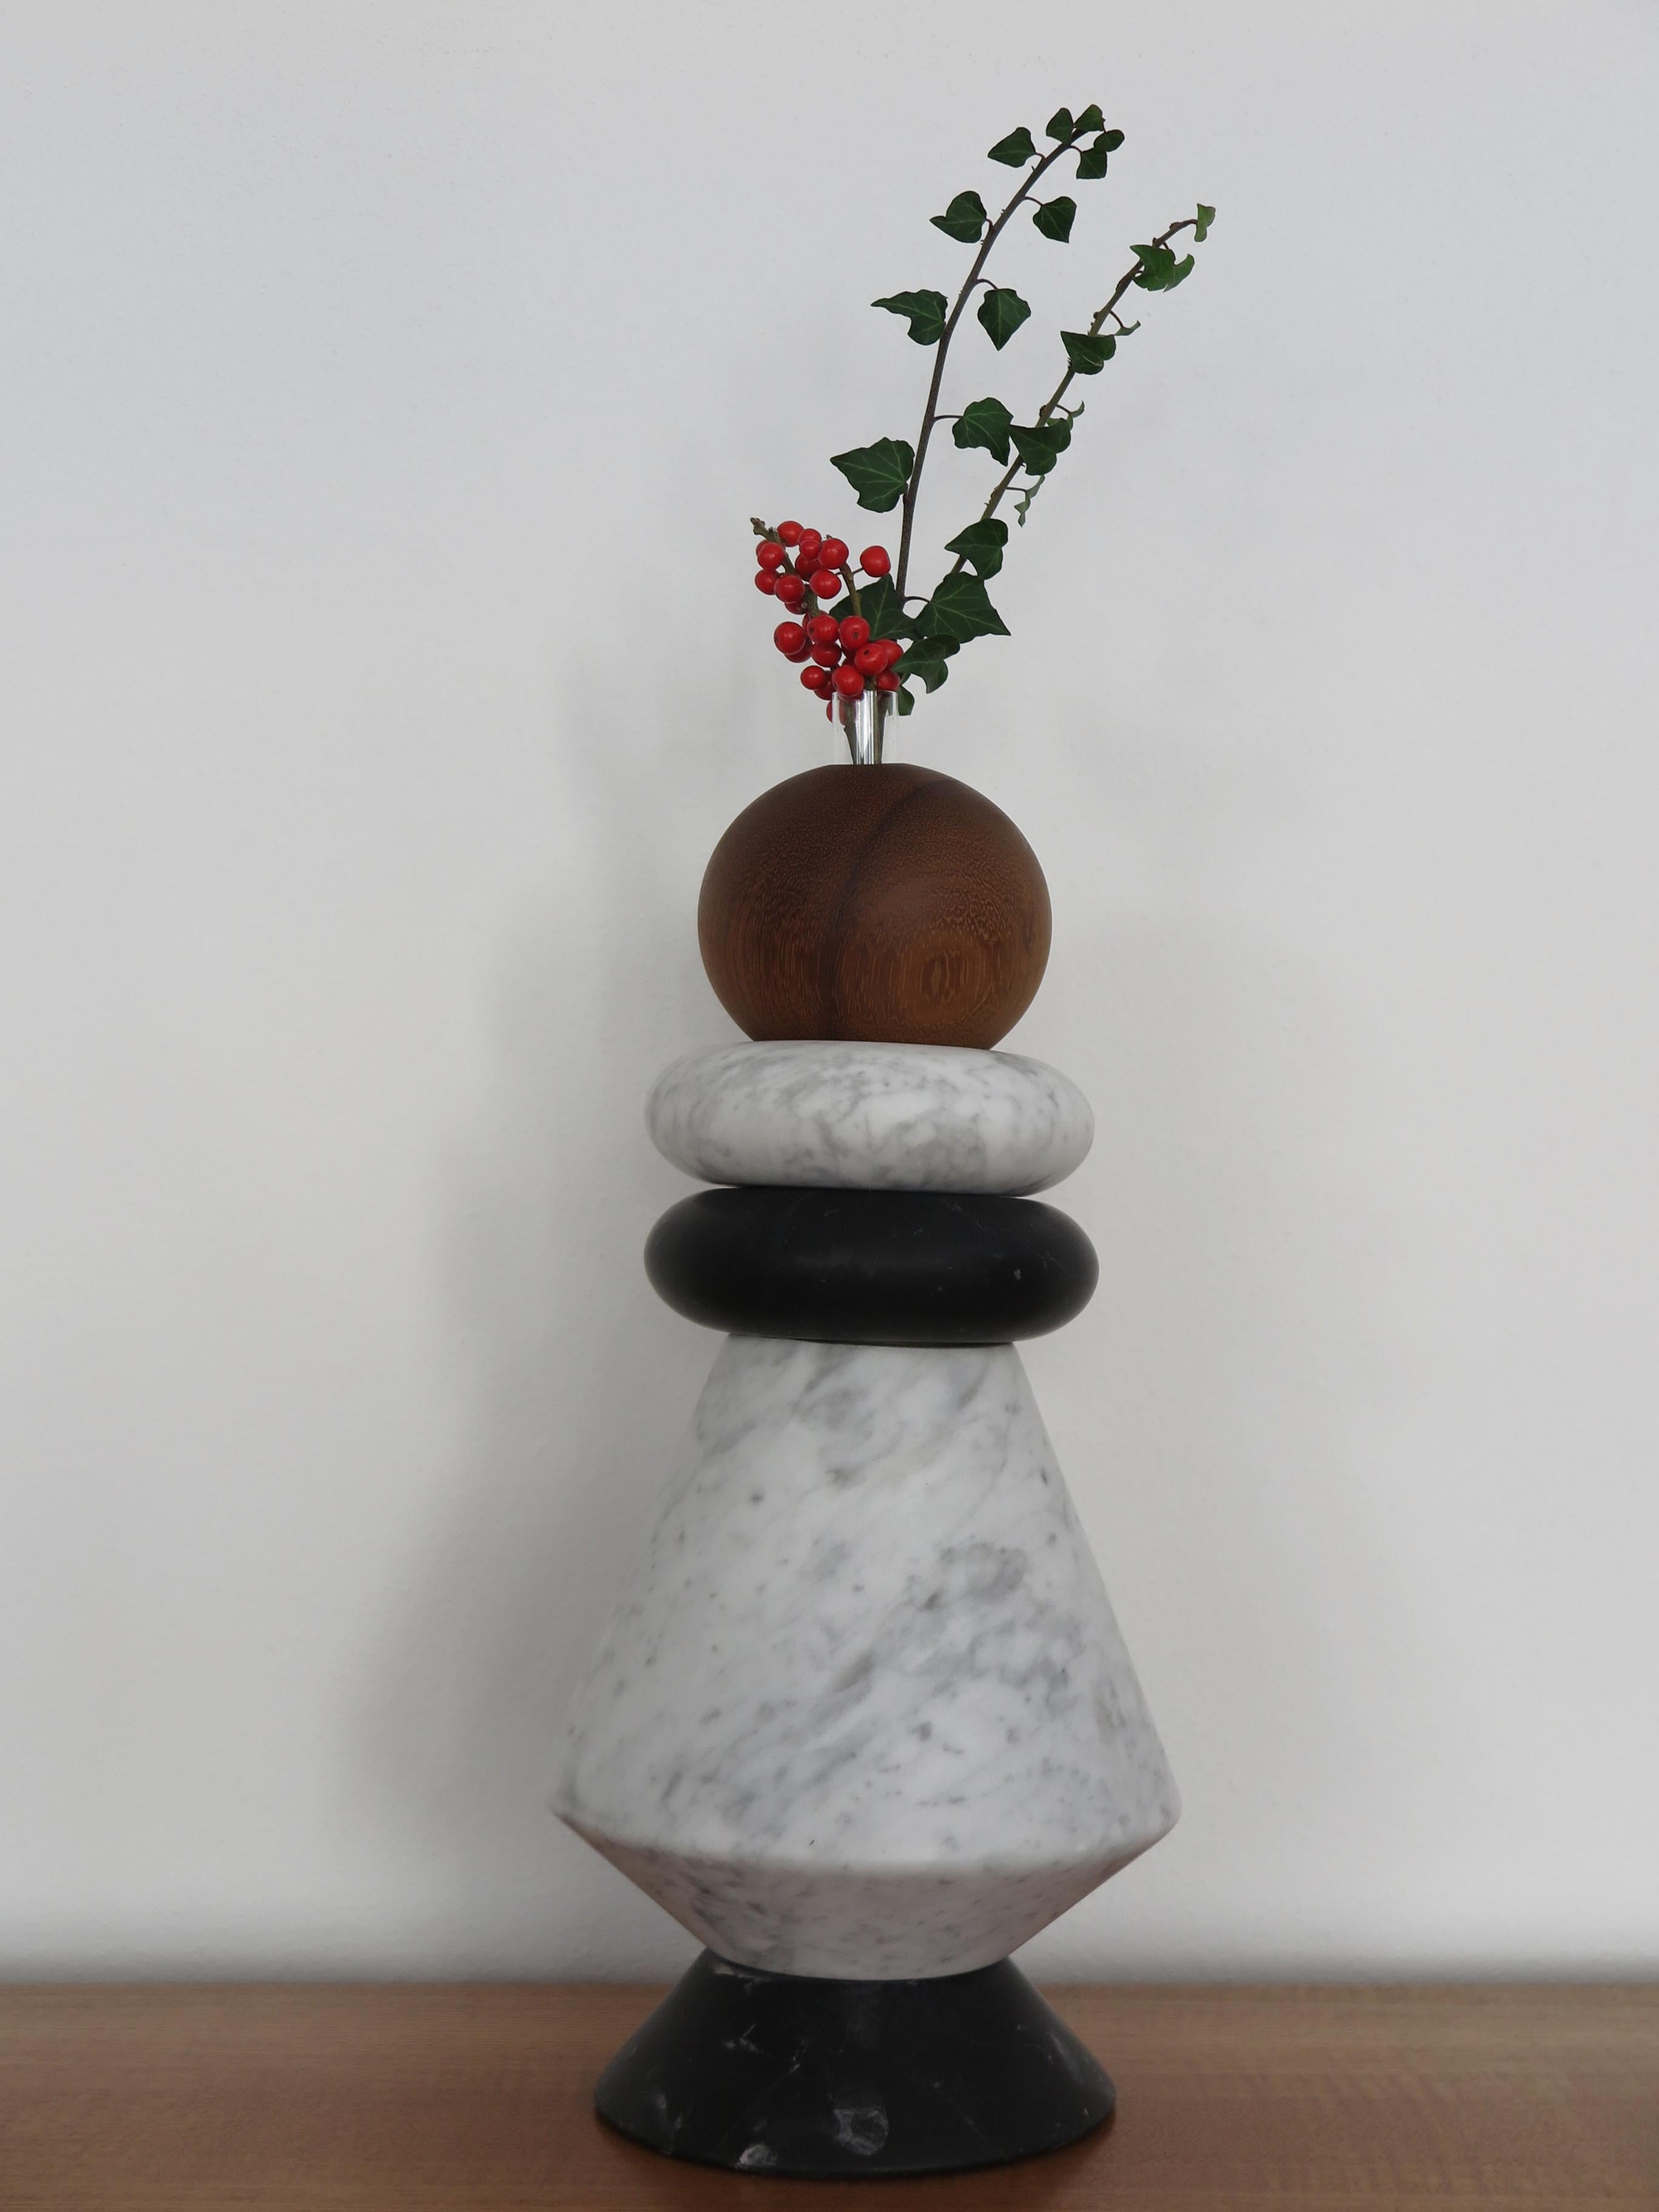 Sculpture contemporaine italienne, bougeoir et vase à fleurs, modulable à volonté en marbre blanc de Carrare, marbre noir, et bois massif avec inclusion de deux vases en verre pour fleurs fraîches.
Les différents éléments peuvent être composés et